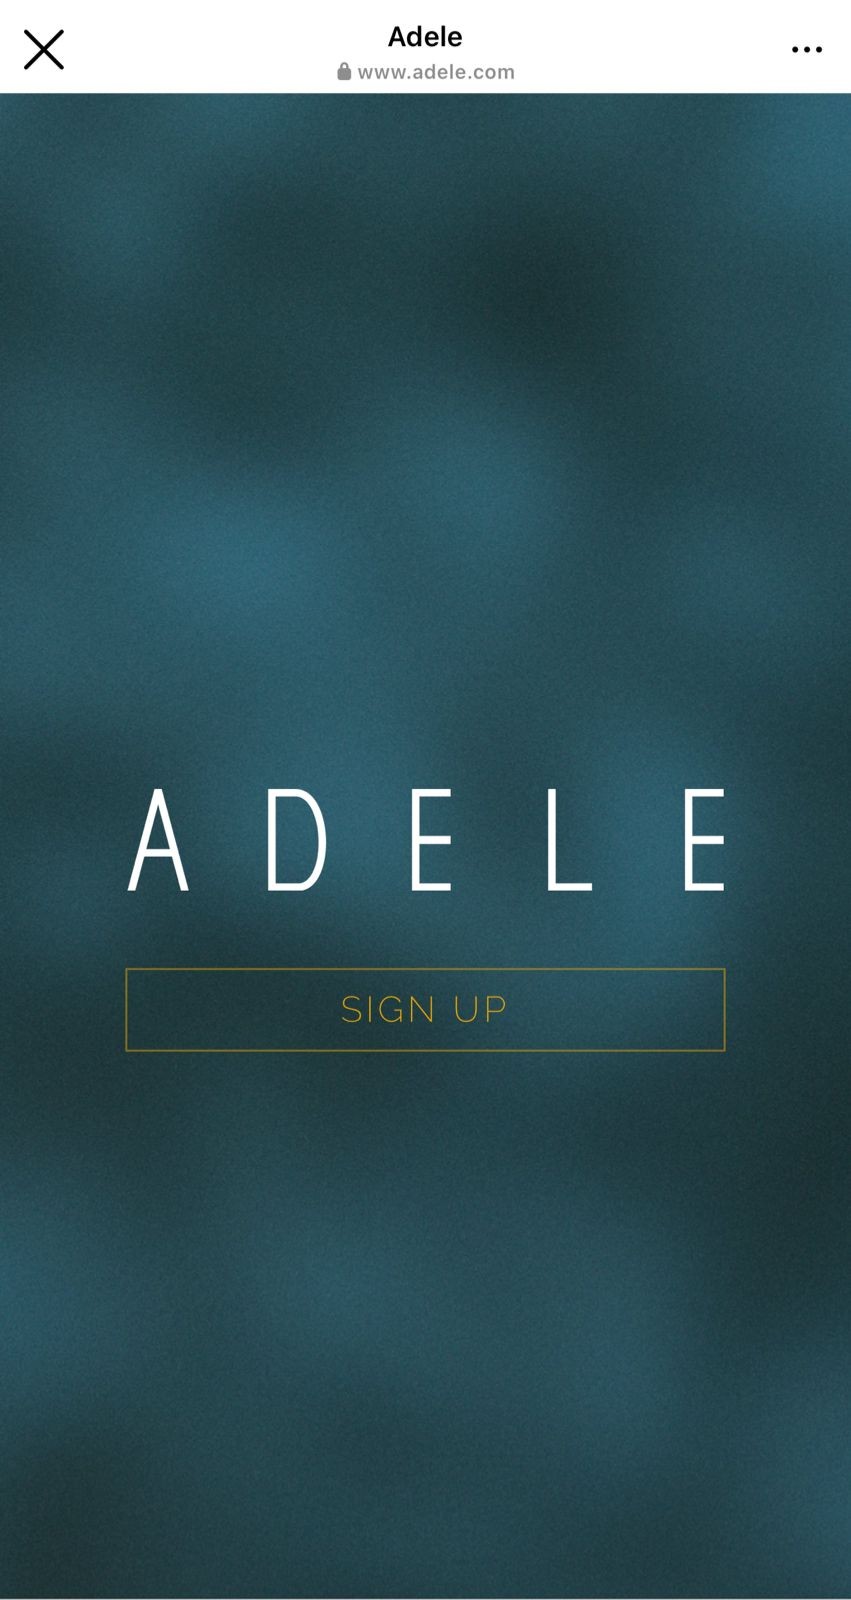 Adele muda layout de suas redes sociais e site, provocando lançamento de novo álbum (Foto: Reprodução/Instagram)